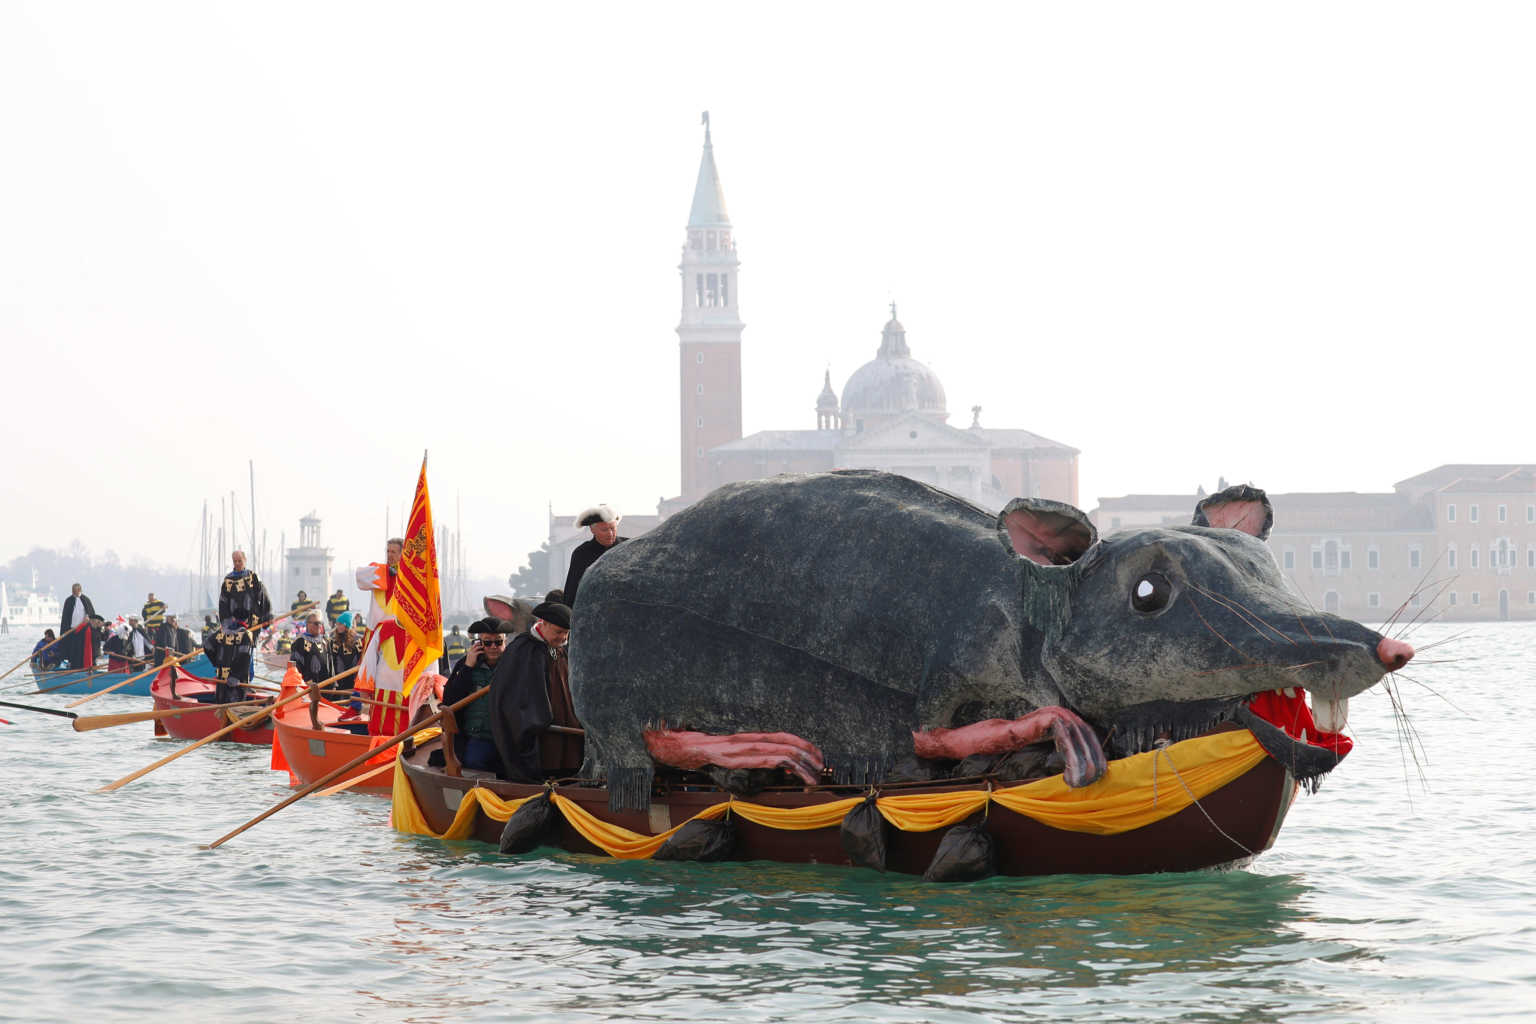 Άκυρώνεται το διάσημο καρναβάλι της Βενετίας! Αιτία ο κορονοϊός